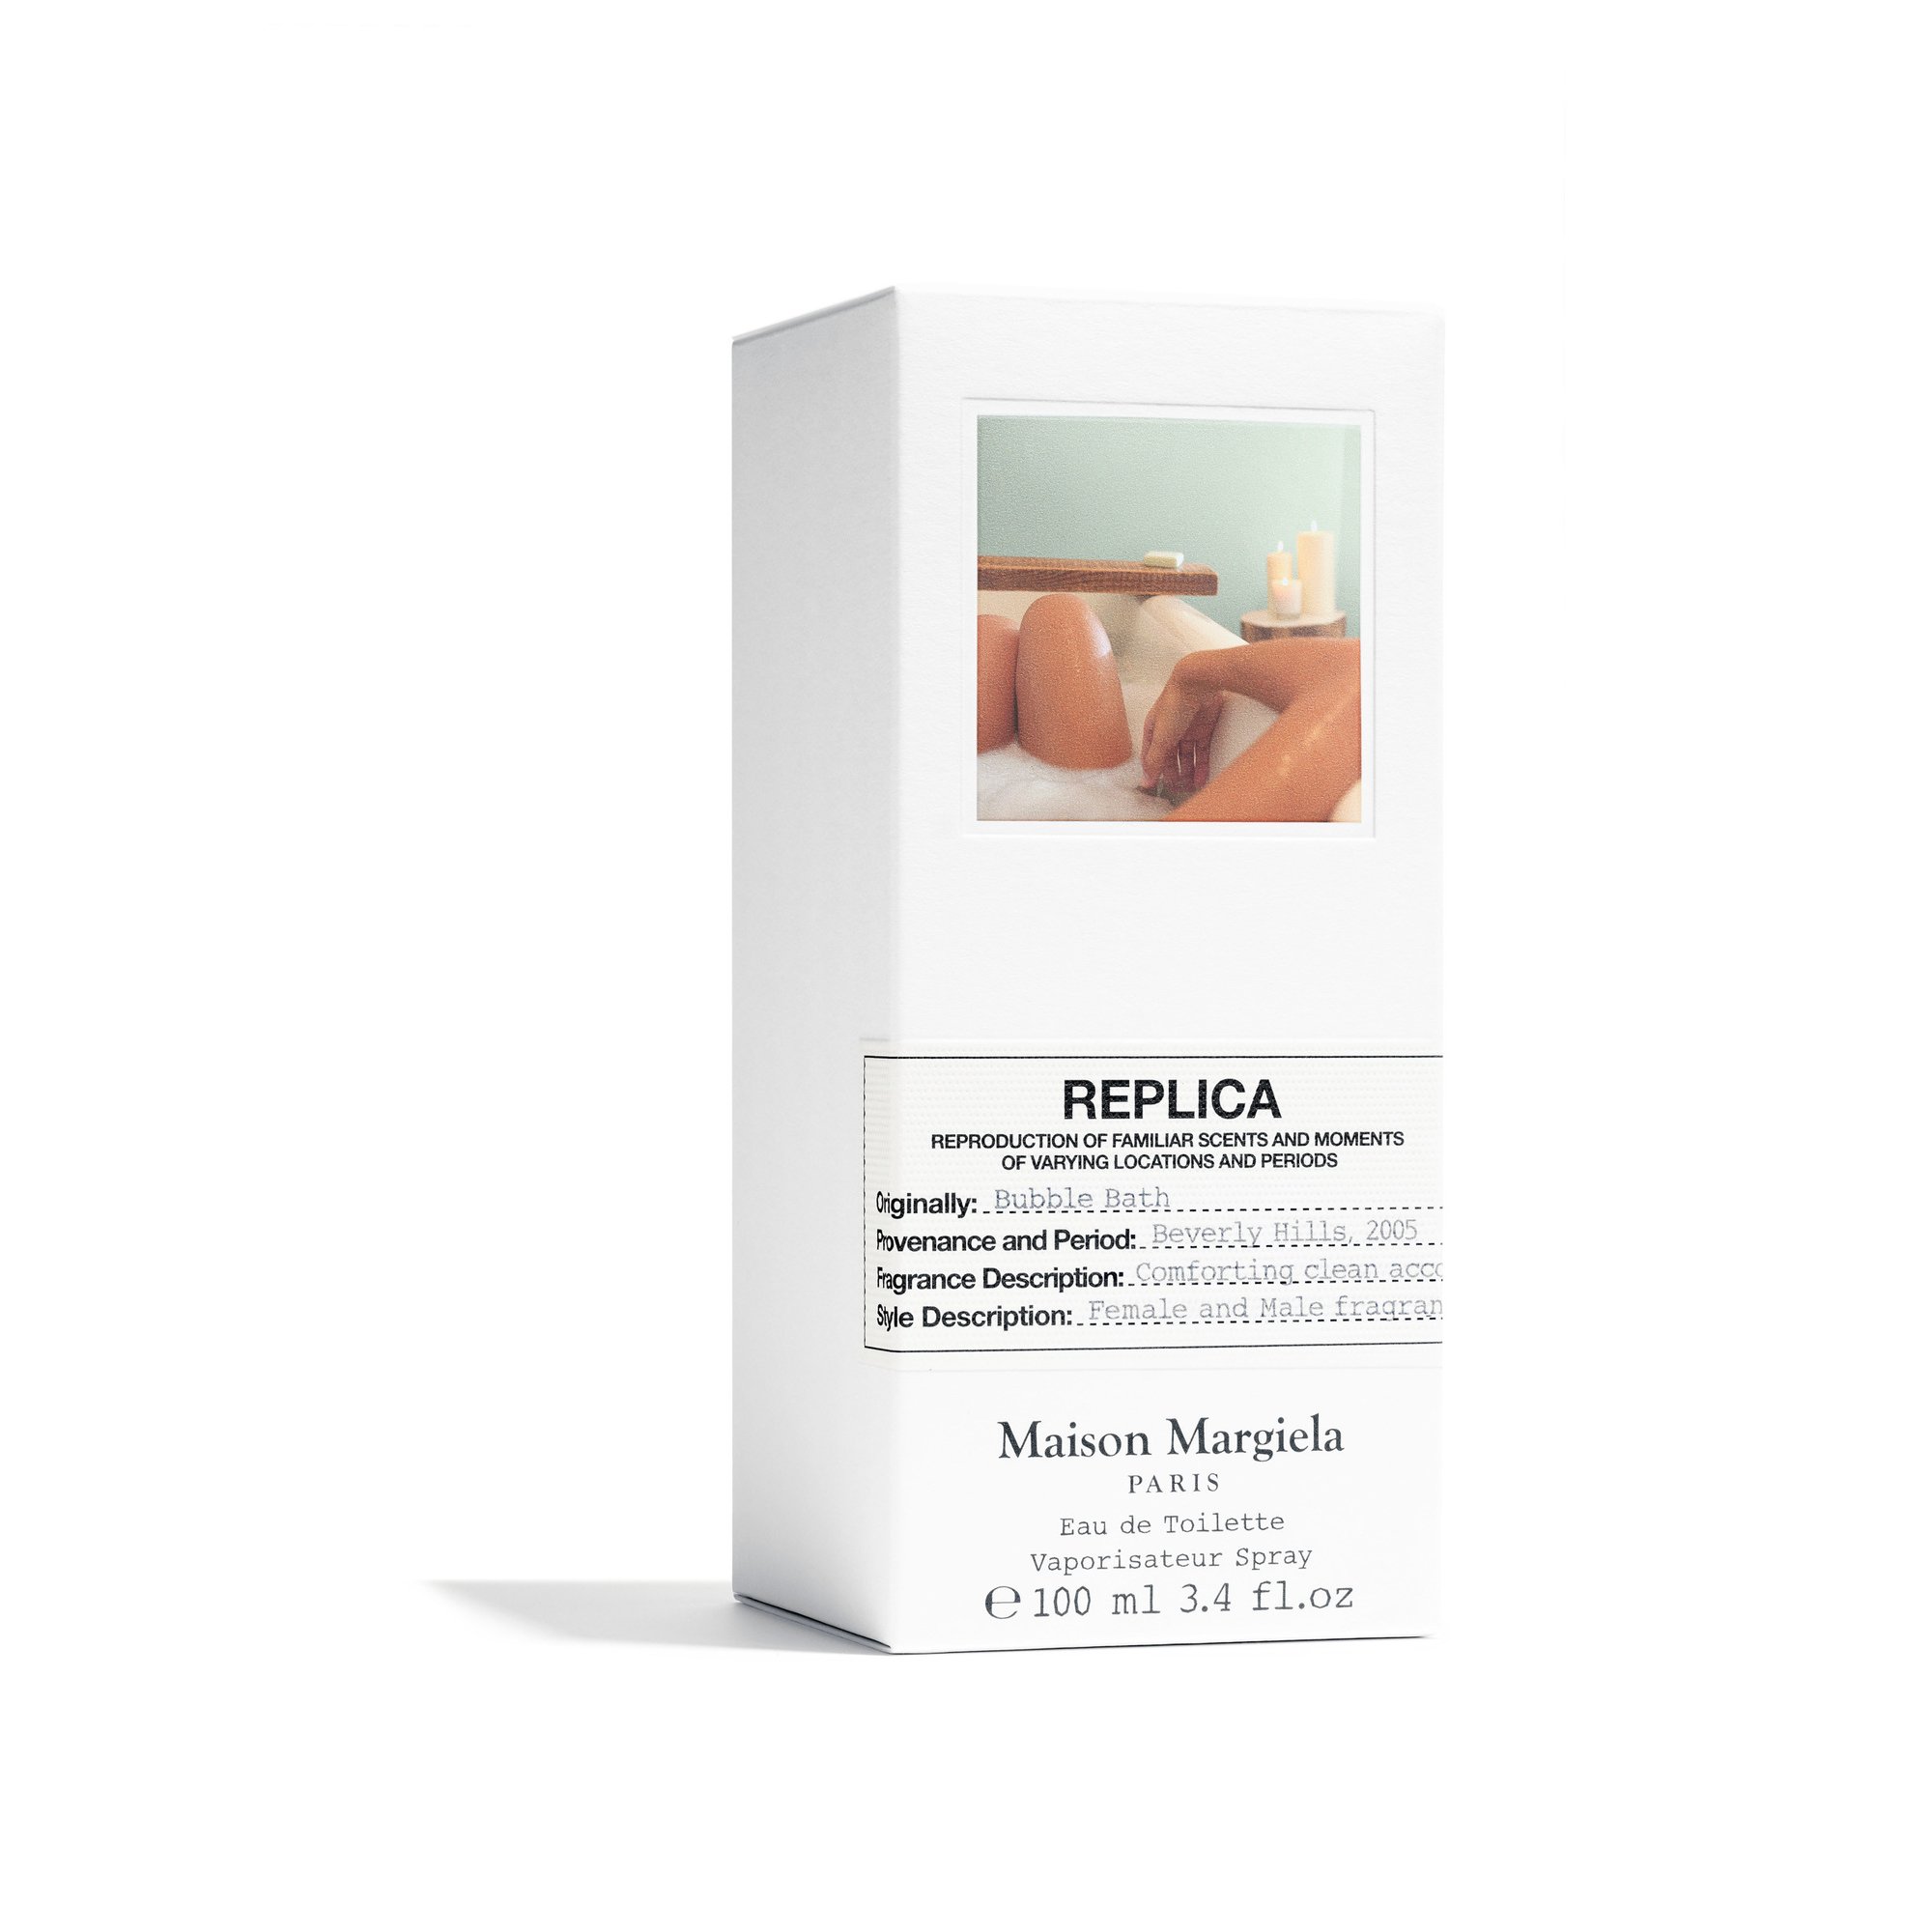 メゾン マルジェラの香水「レプリカ」の新作はバスタイムをイメージ 